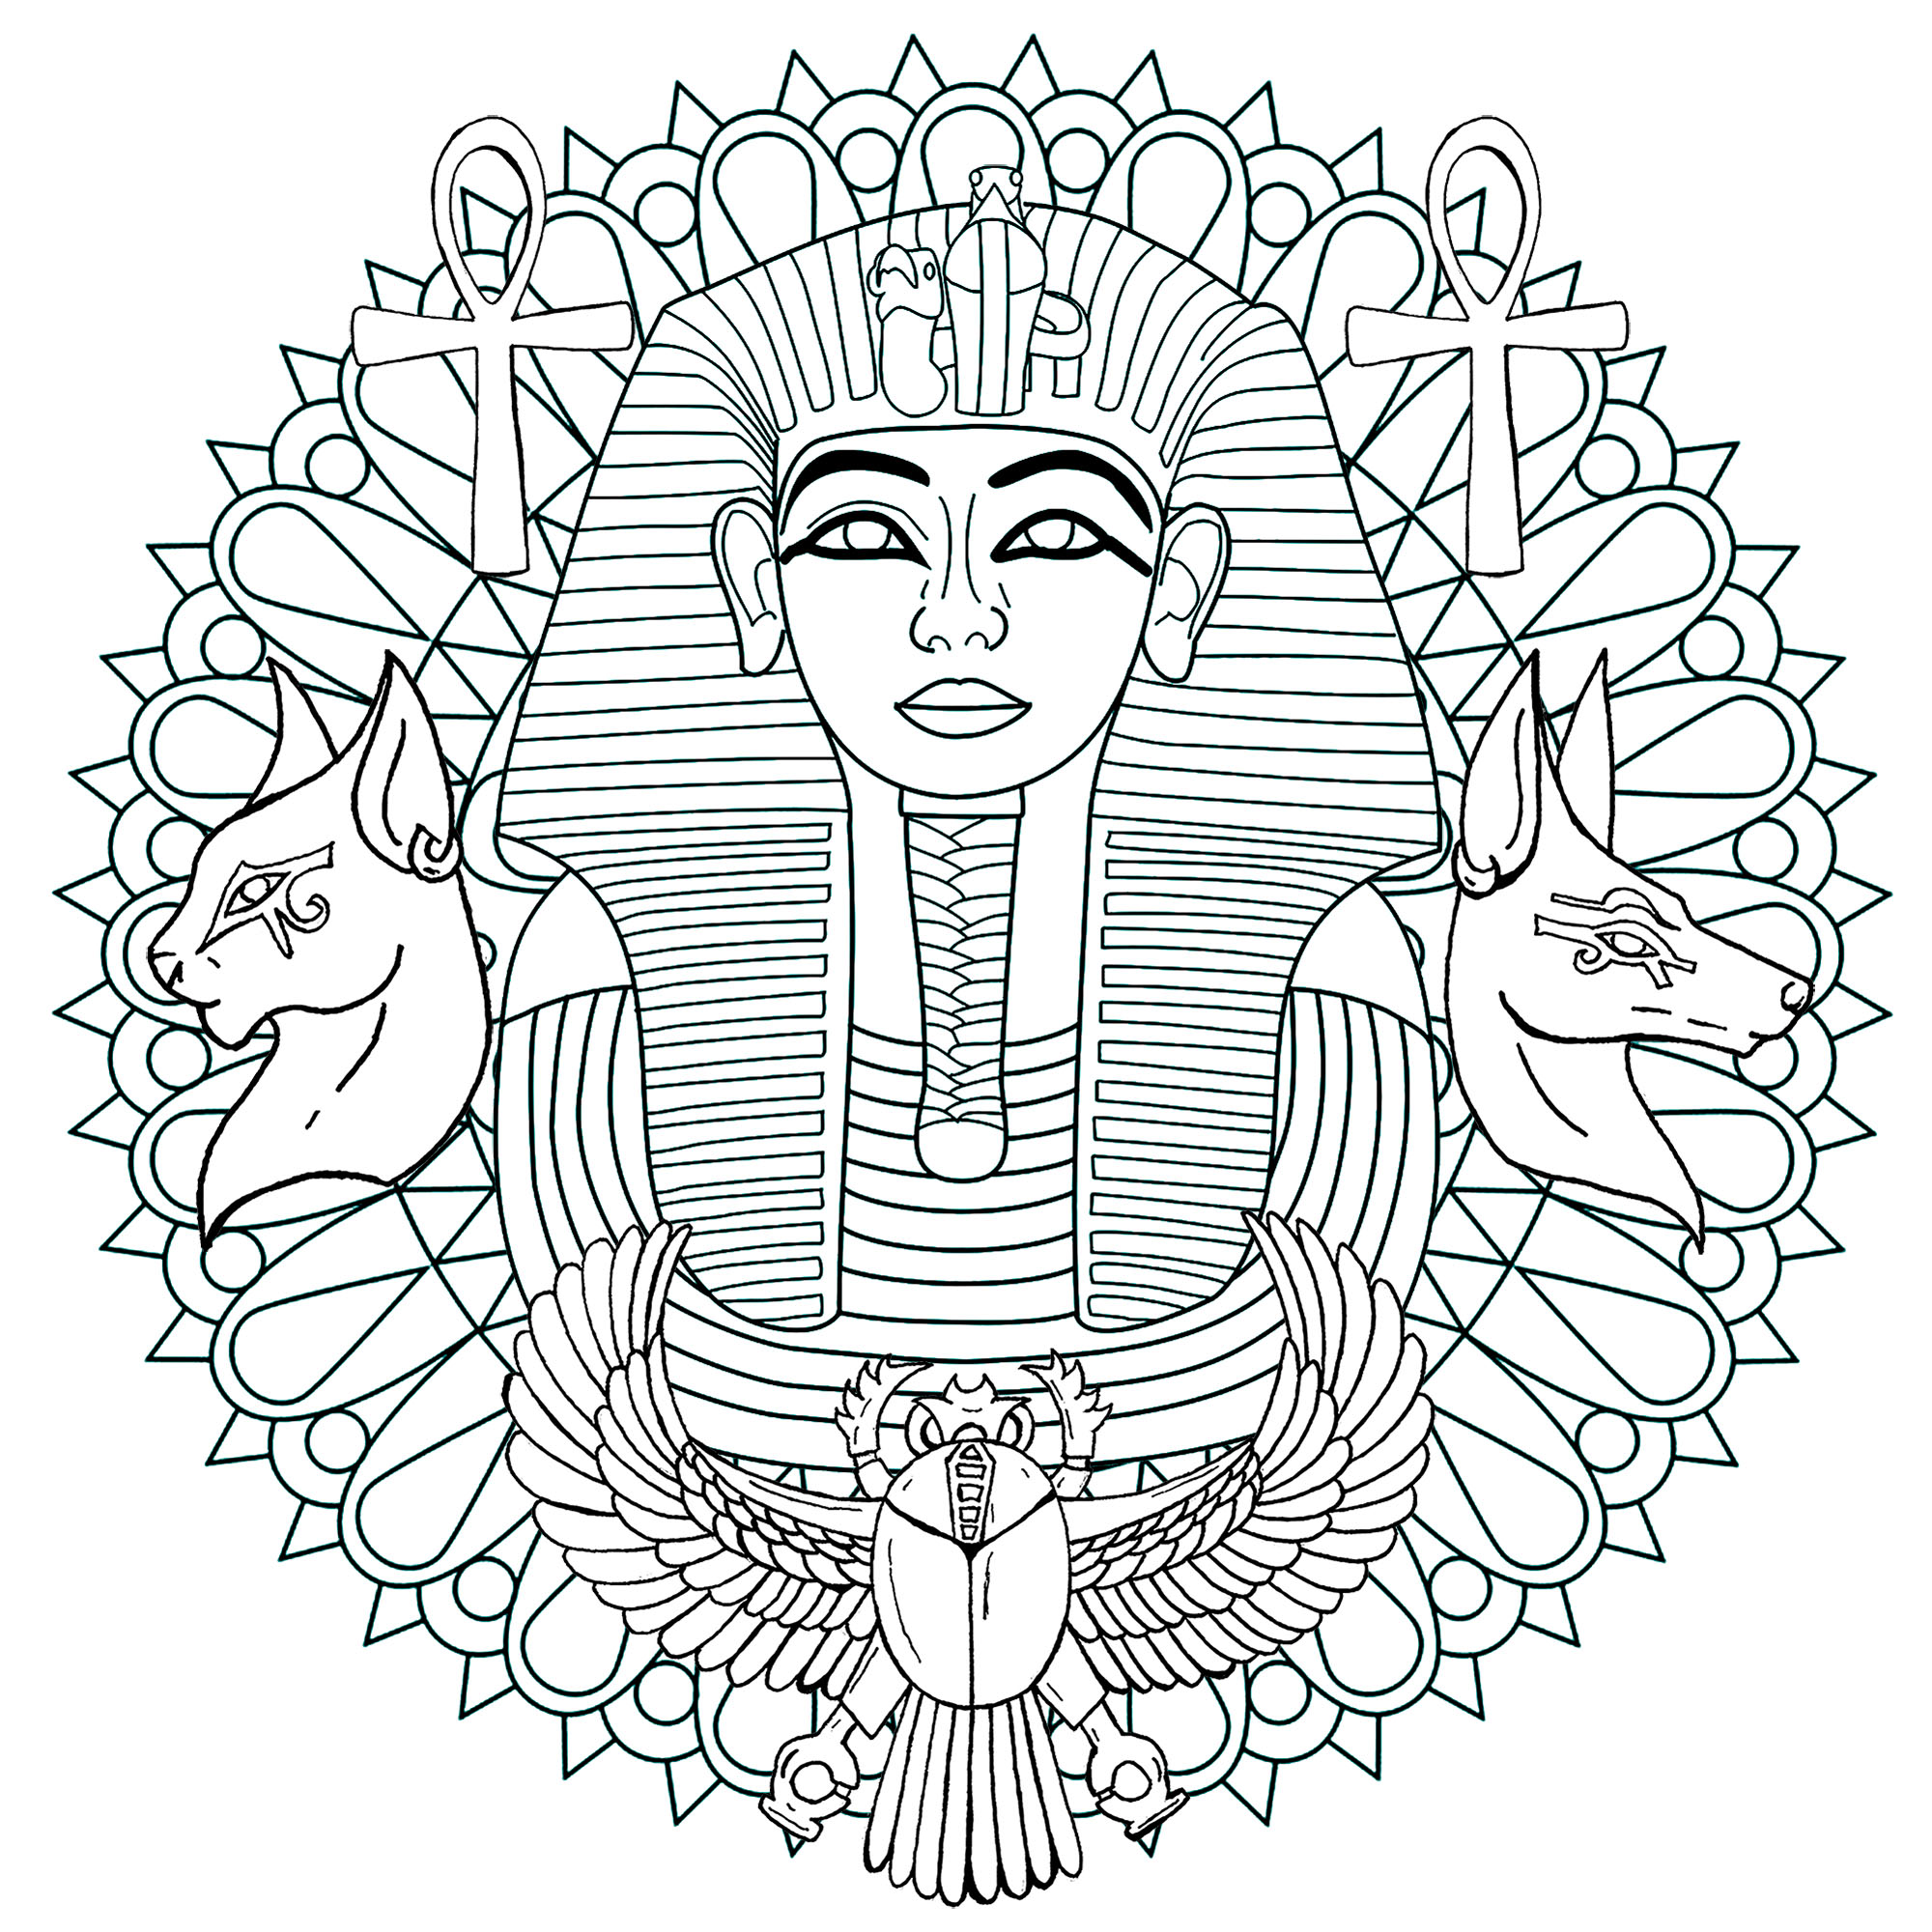 Pharaon de la 18ème dynastie, Toutânkhamon a régné sur l'Égypte antique au 13ème siècle av. J-C. Voici un Mandala dont il est le sujet principal.